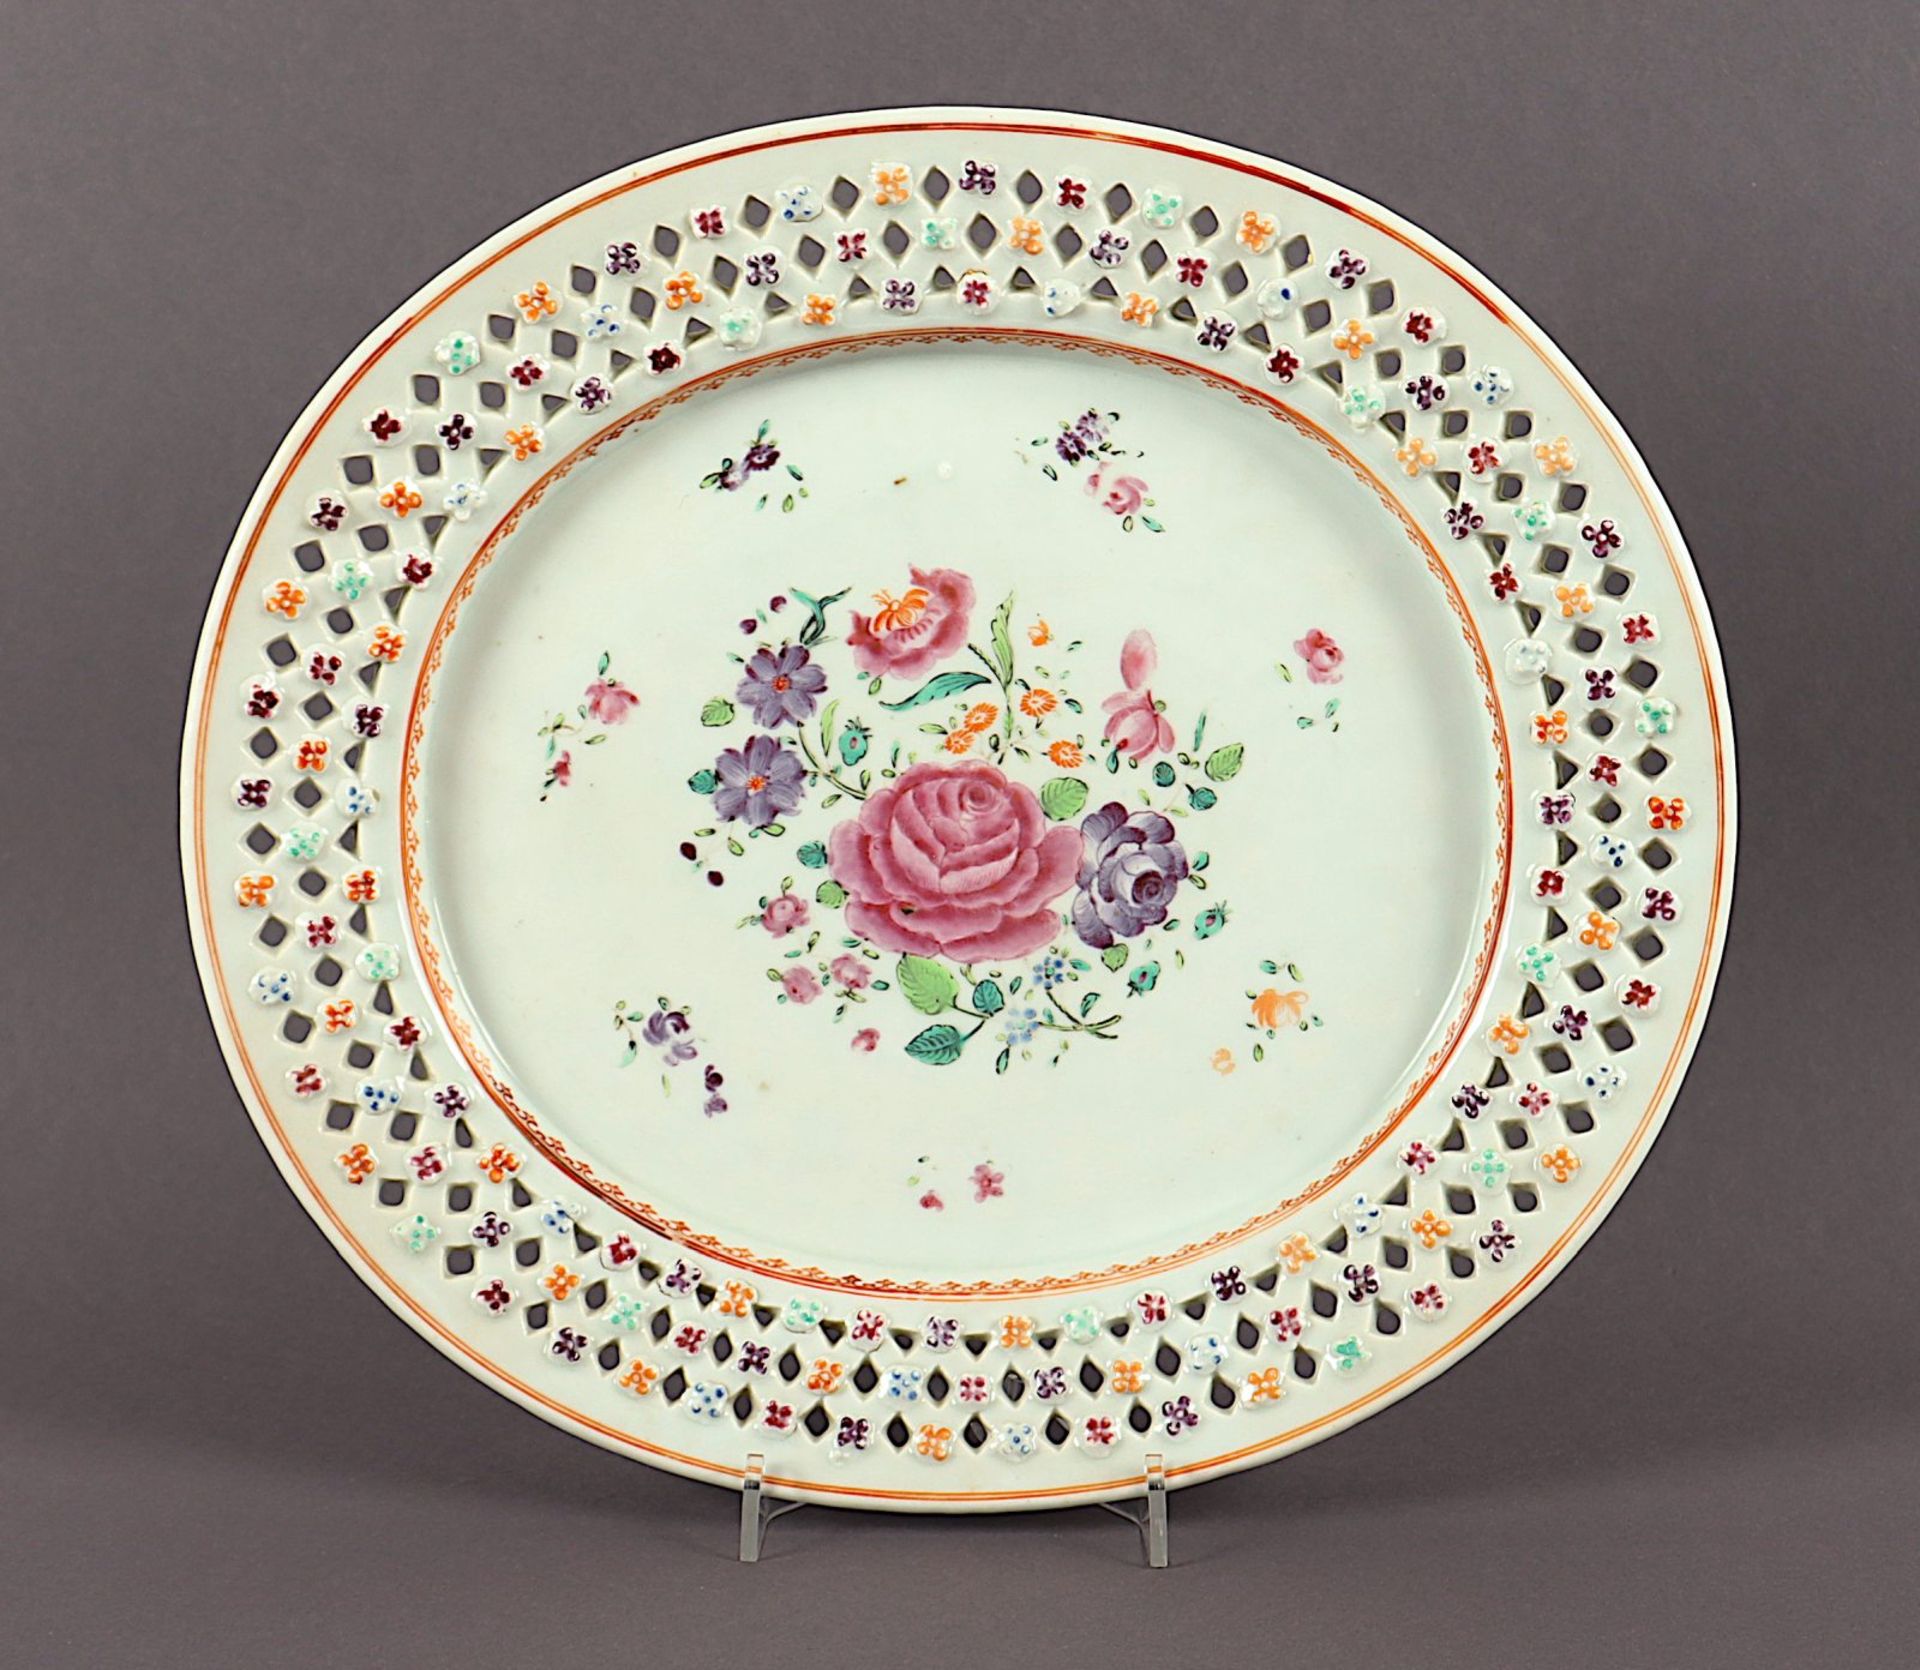 ovale Platte mit Durchbruchrand, Porzellan, China, um 1800